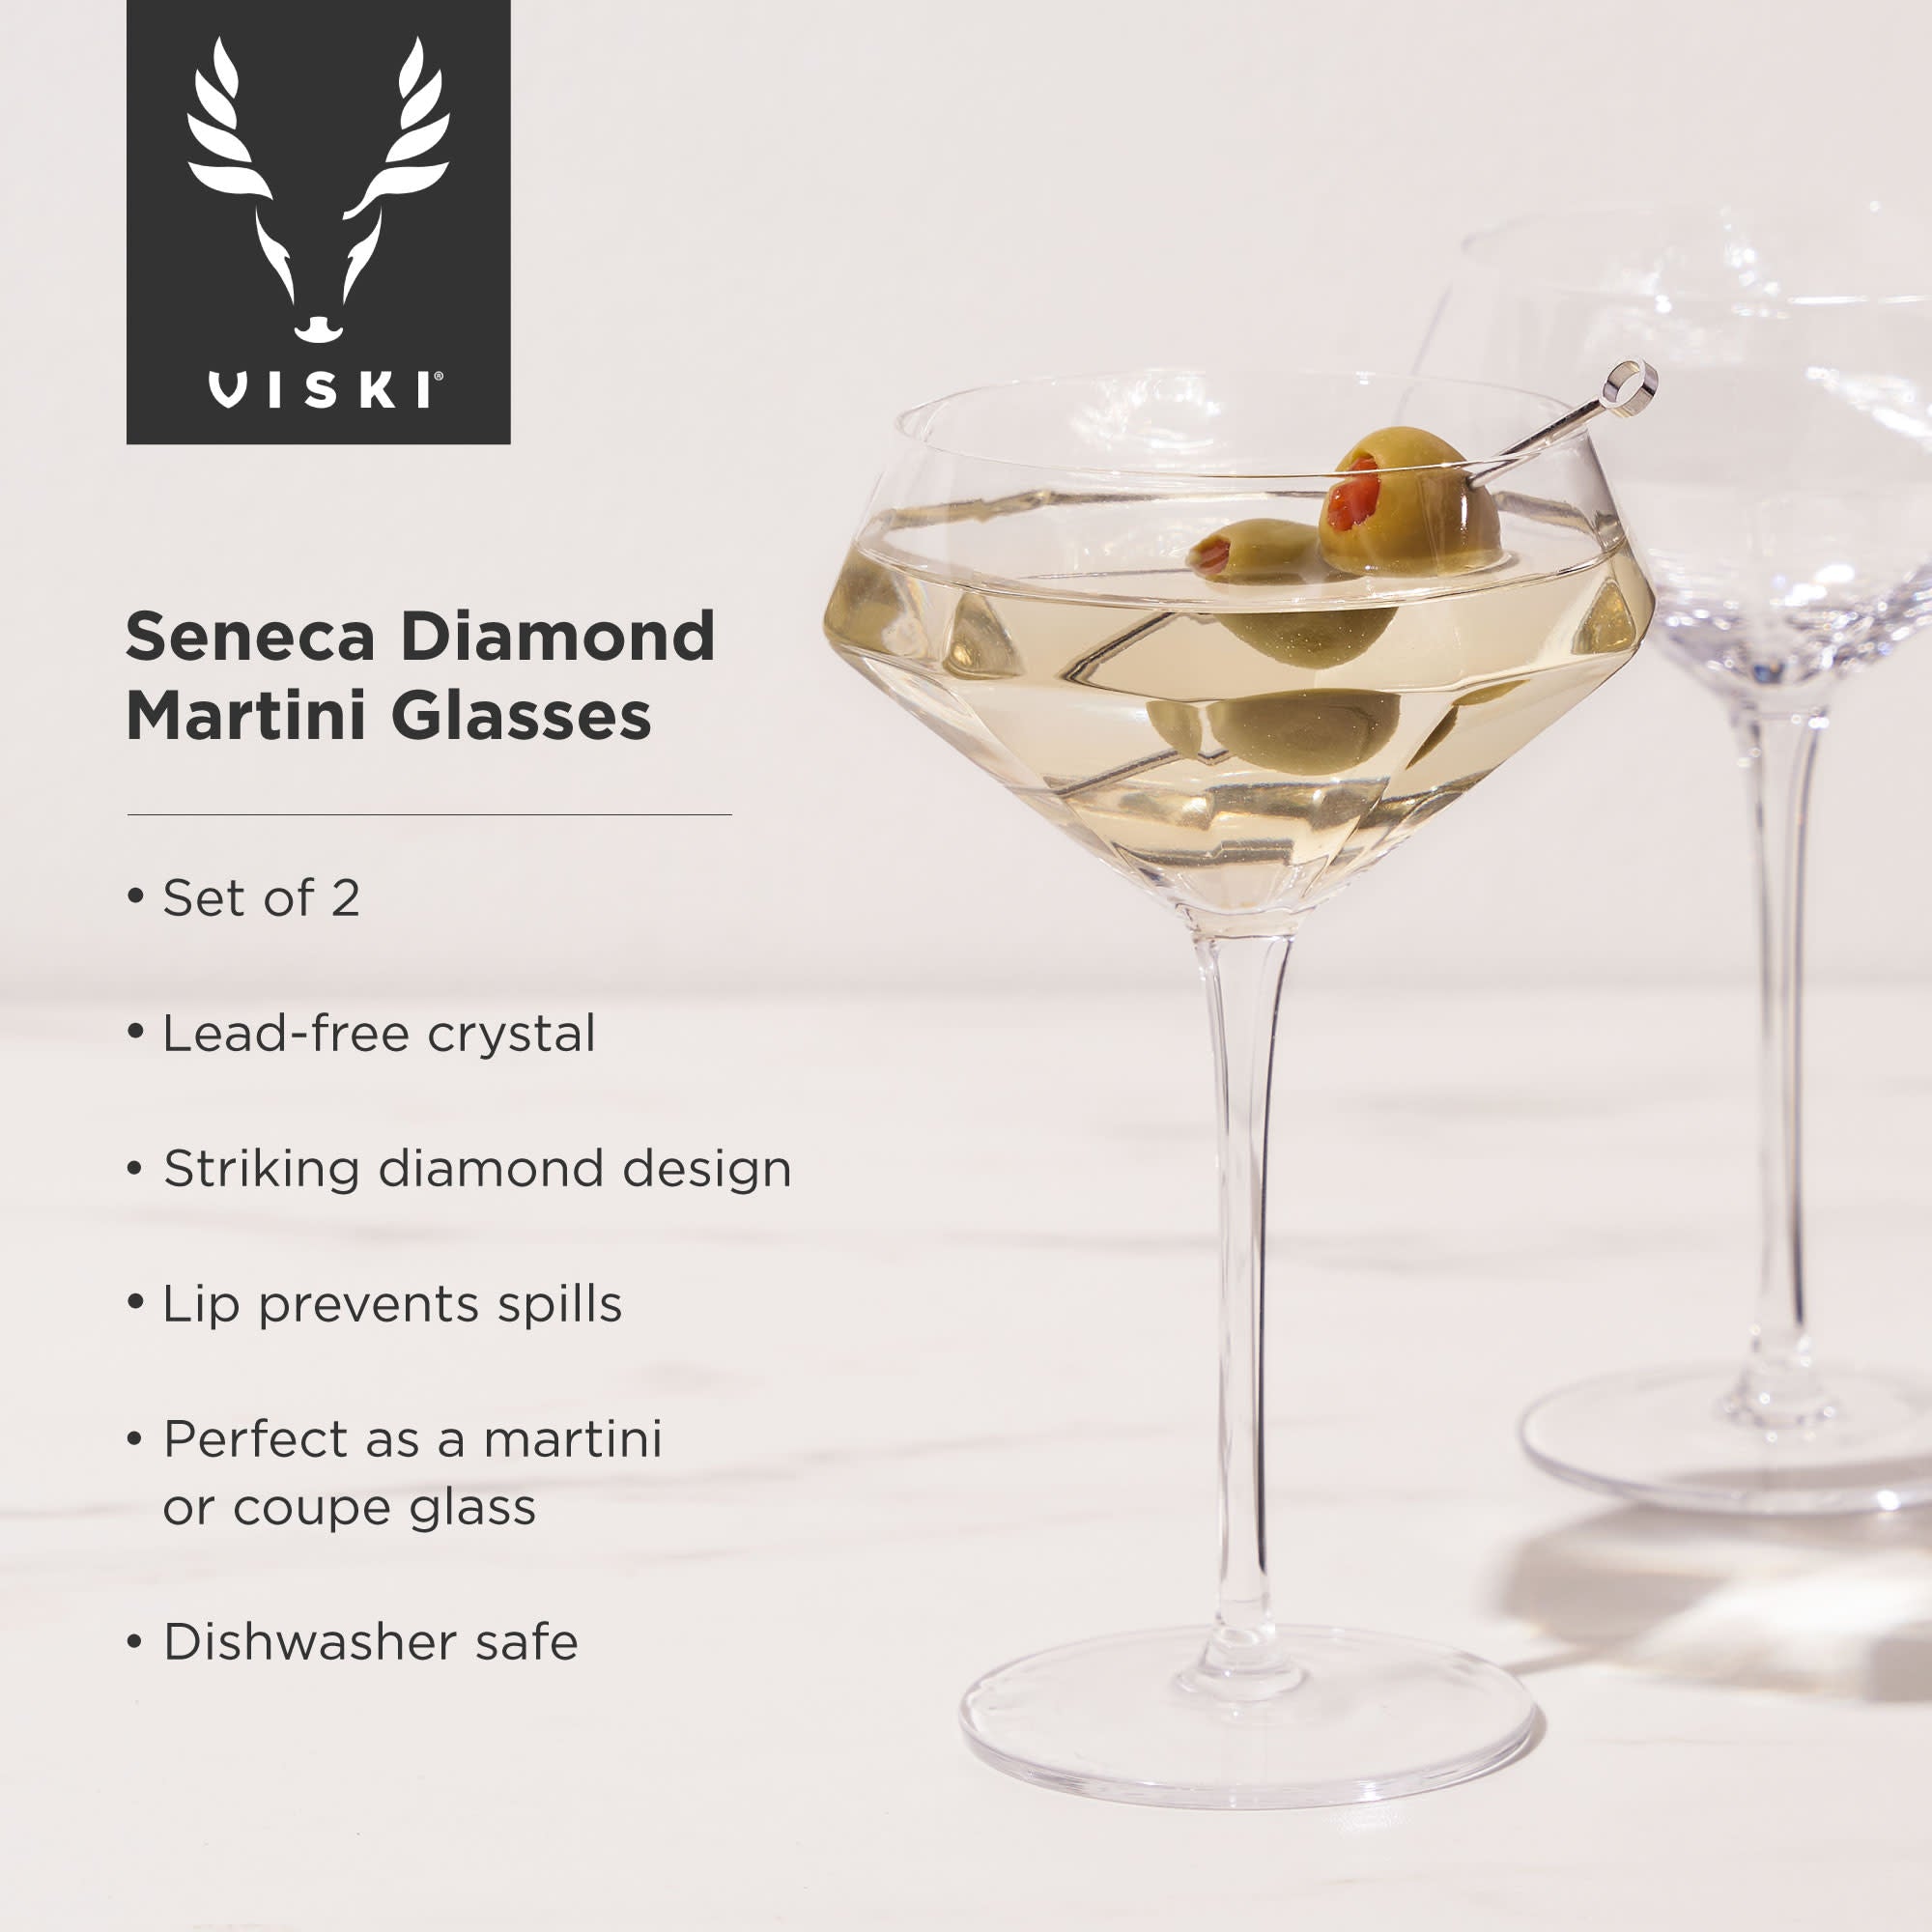 Seneca Diamond Martini Glasses by Viski (11233)